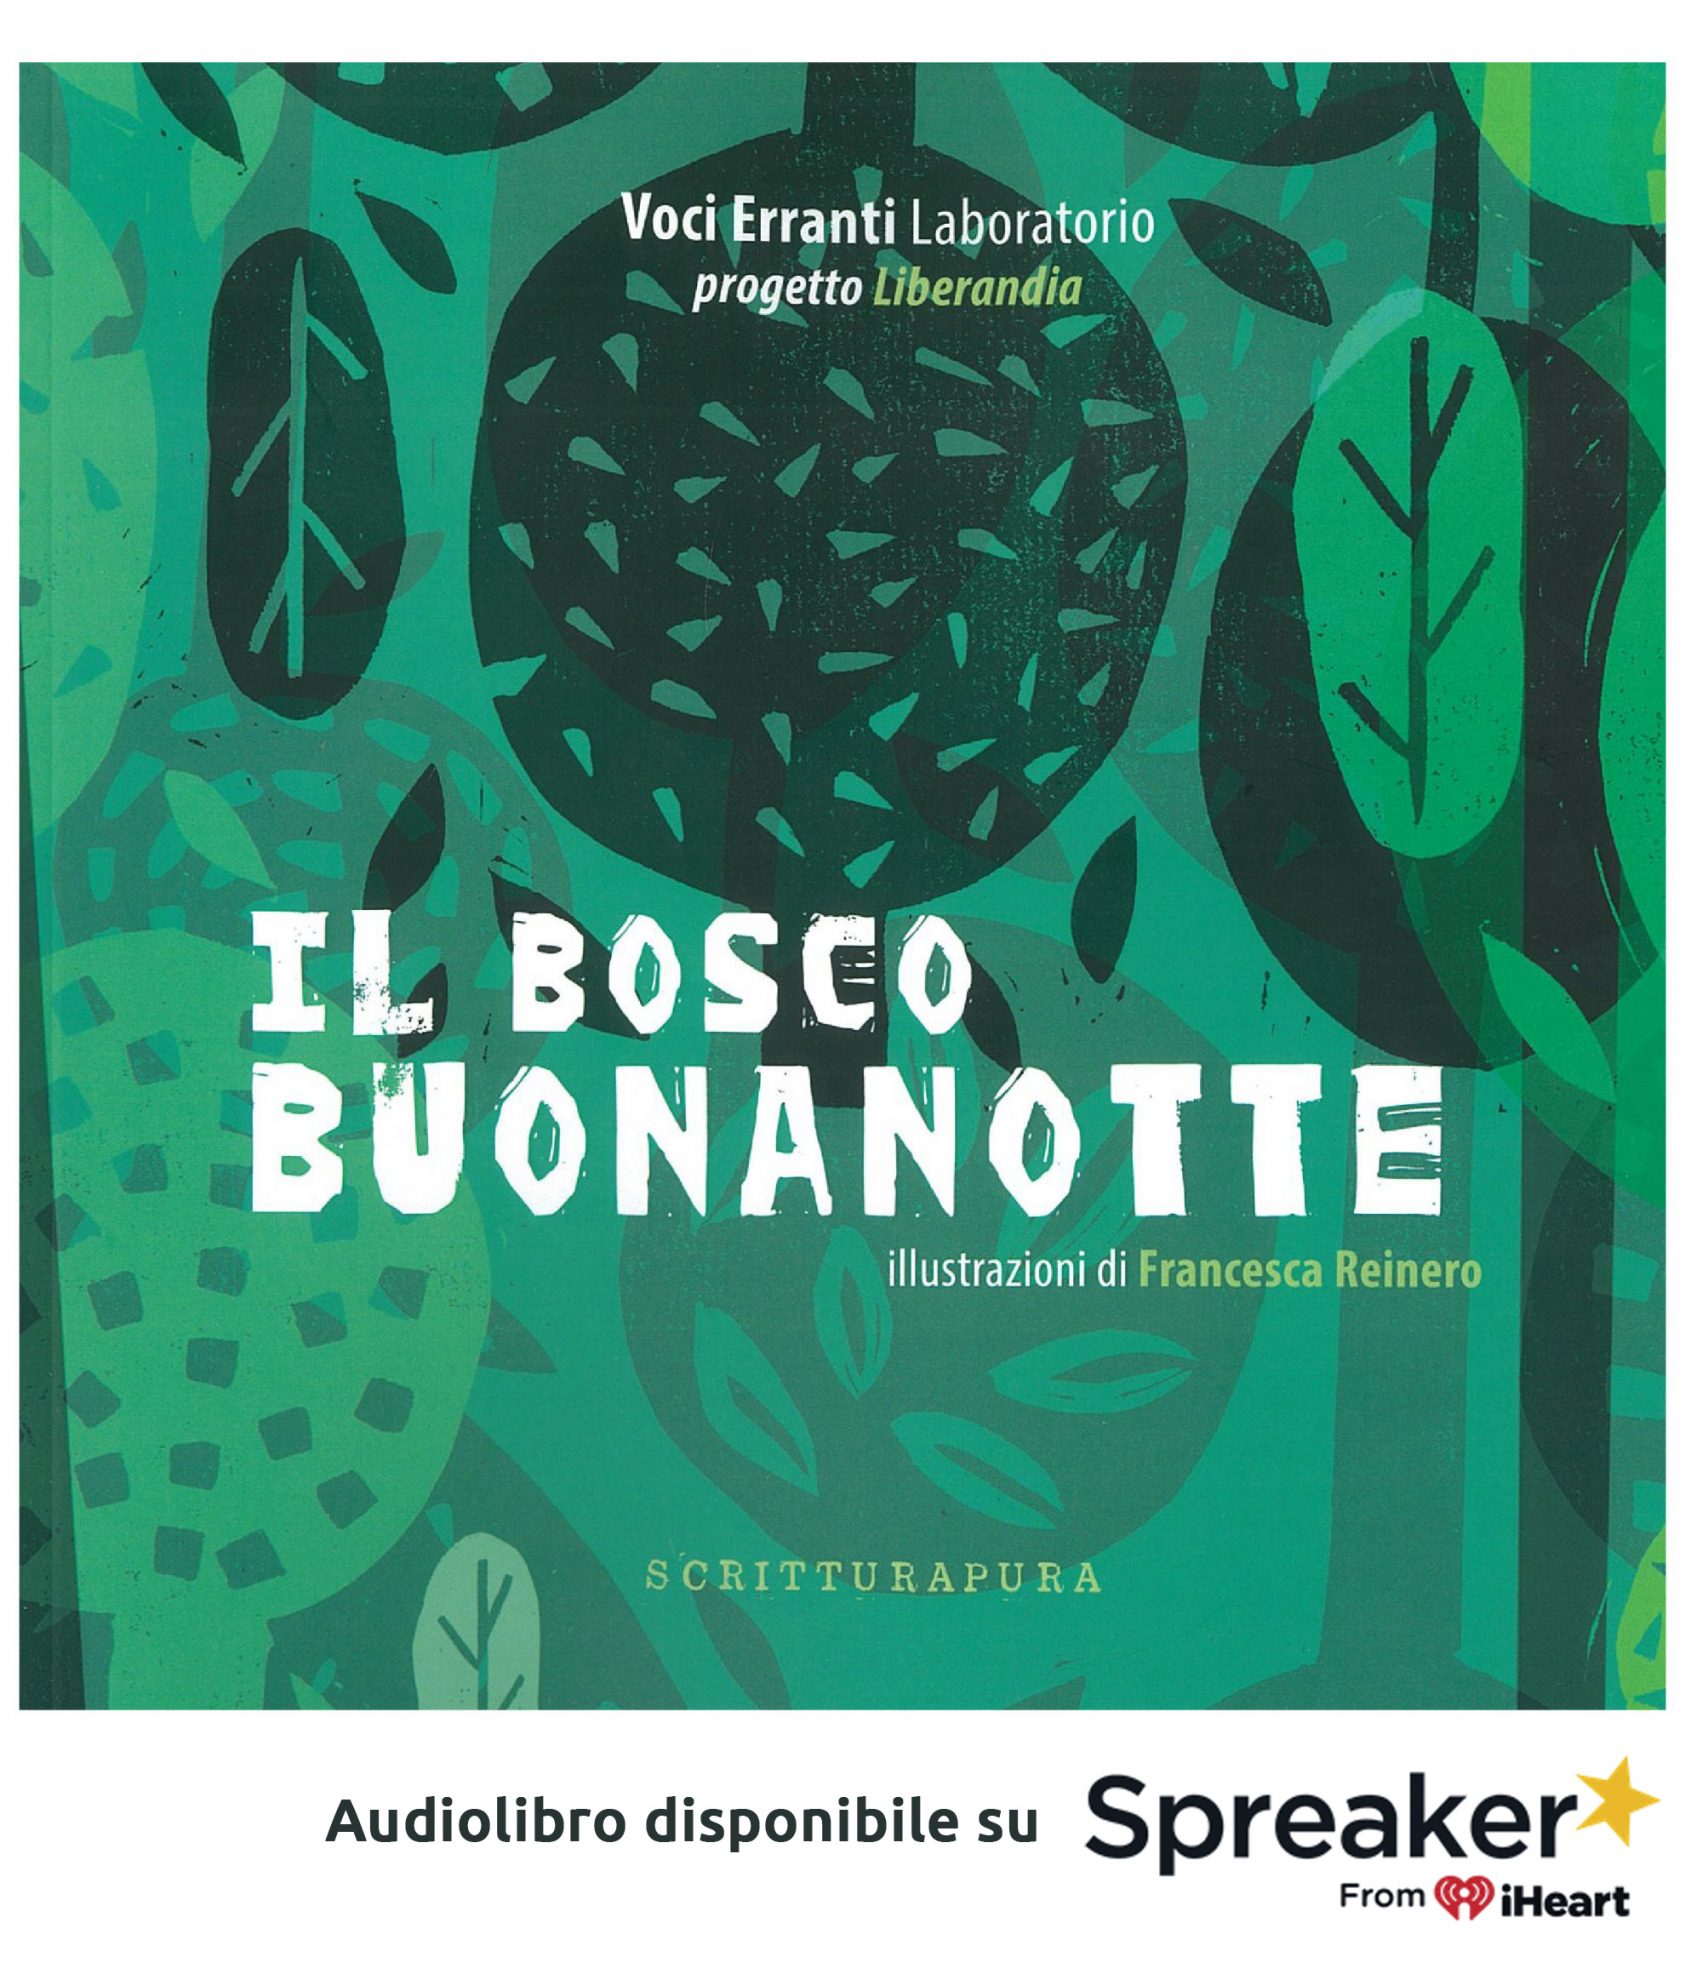 L'audiolibro del libro illustrato Il Bosco Buonanotte su Spreaker